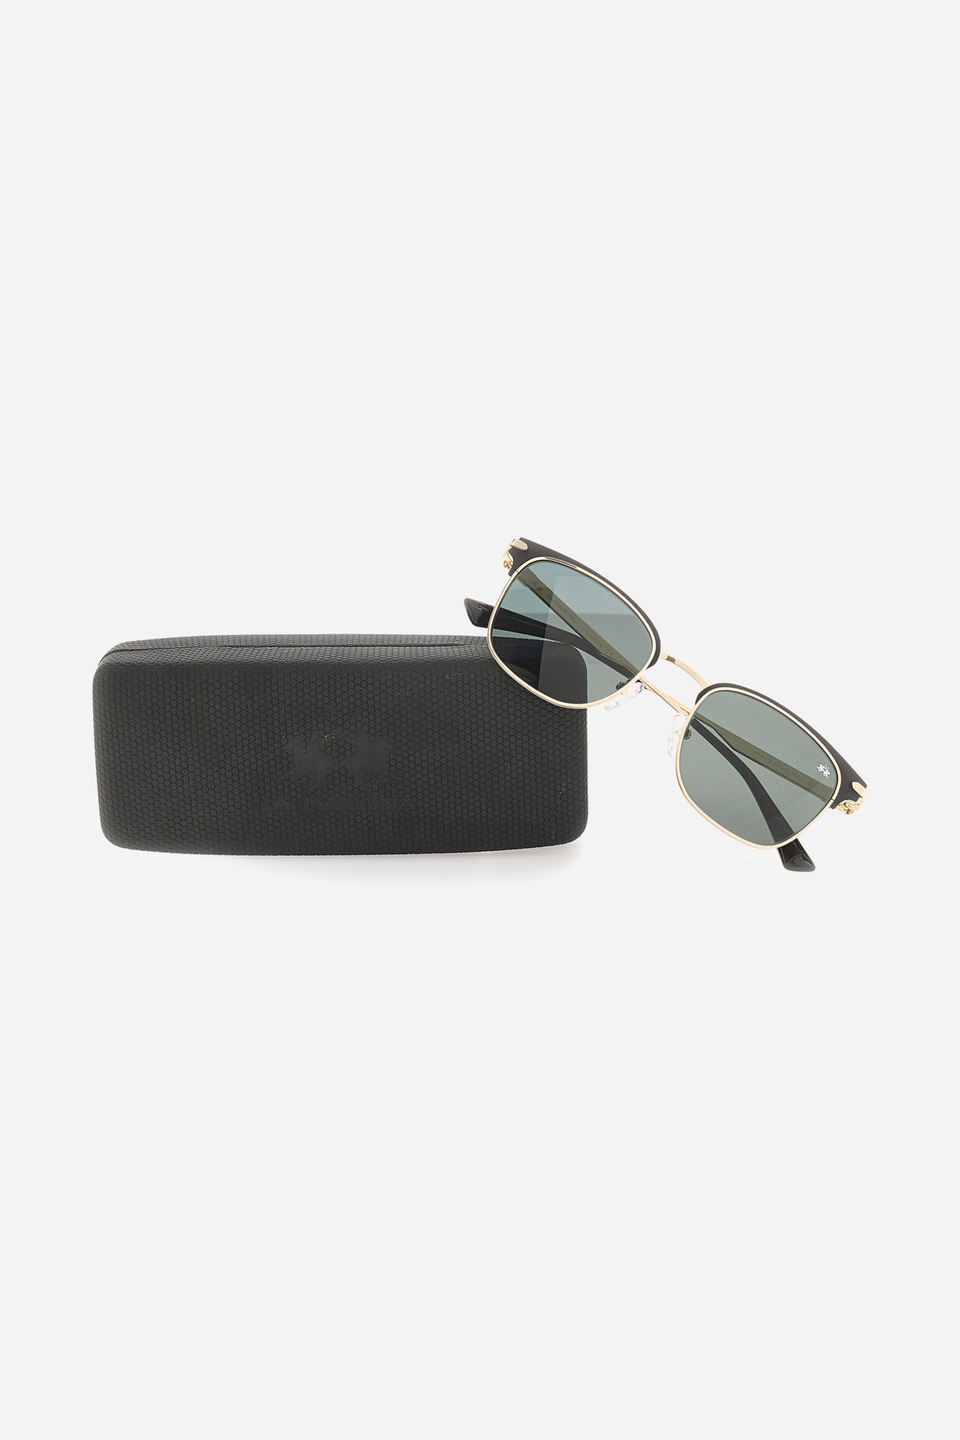 Pantos model sunglasses | La Martina - Official Online Shop